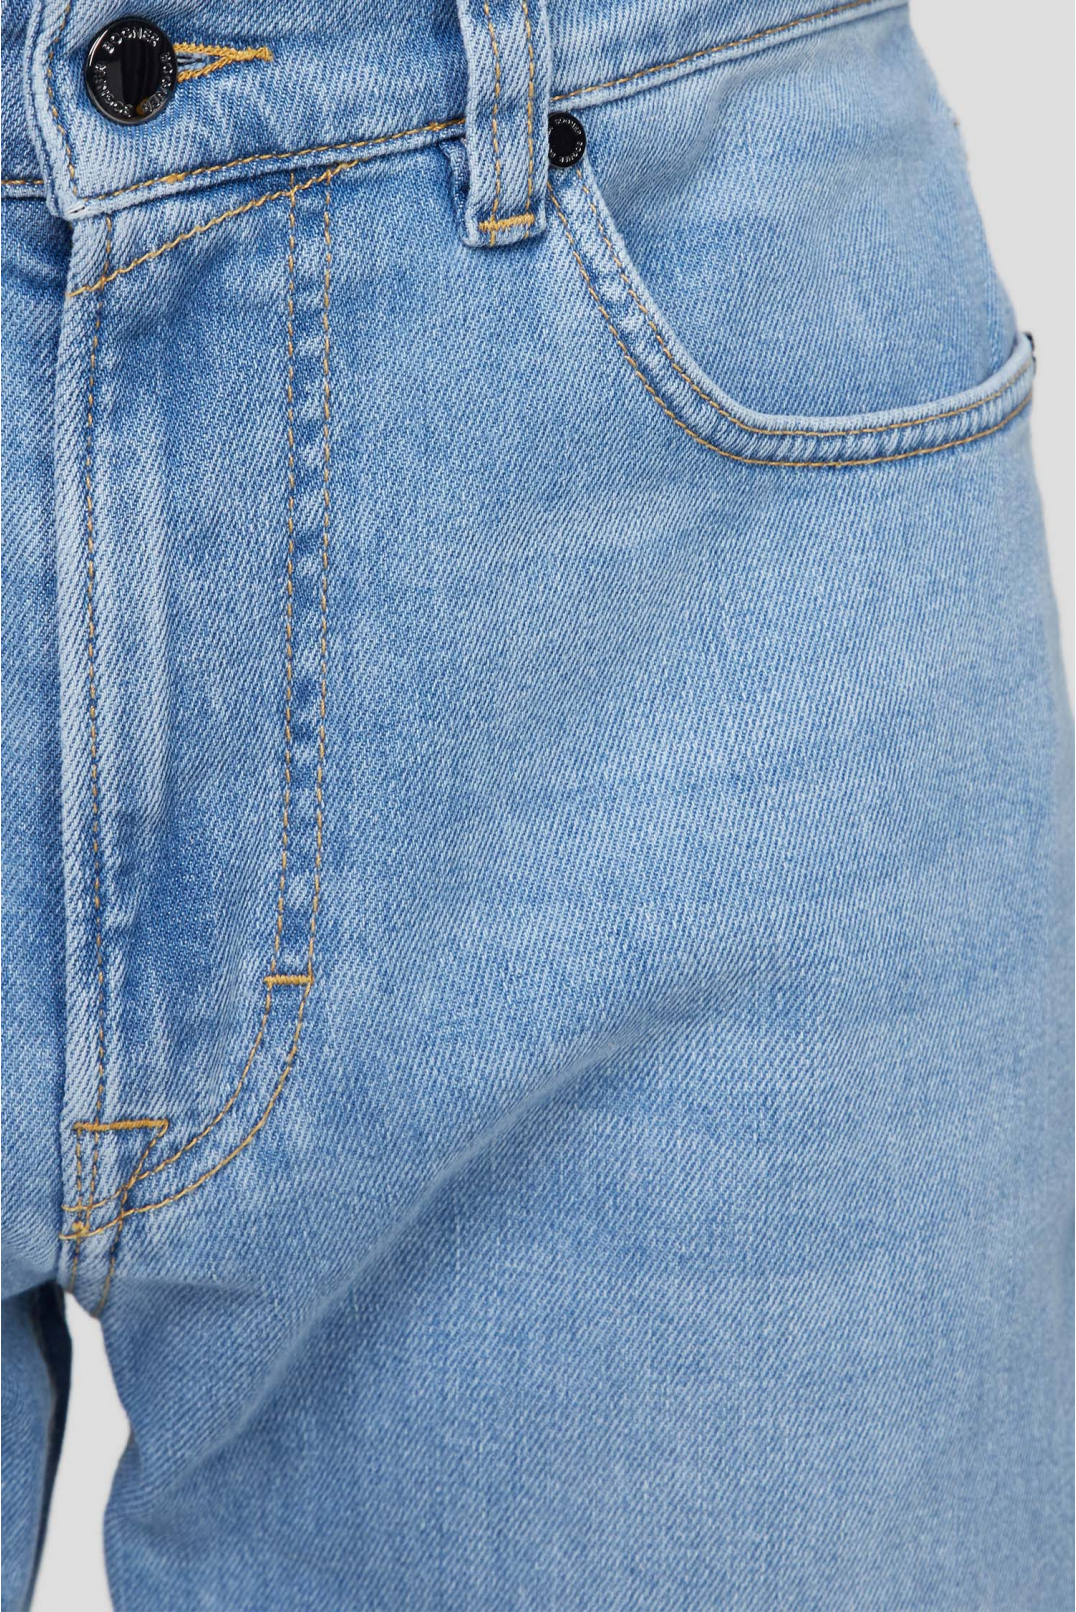 Мужские голубые джинсы - 3